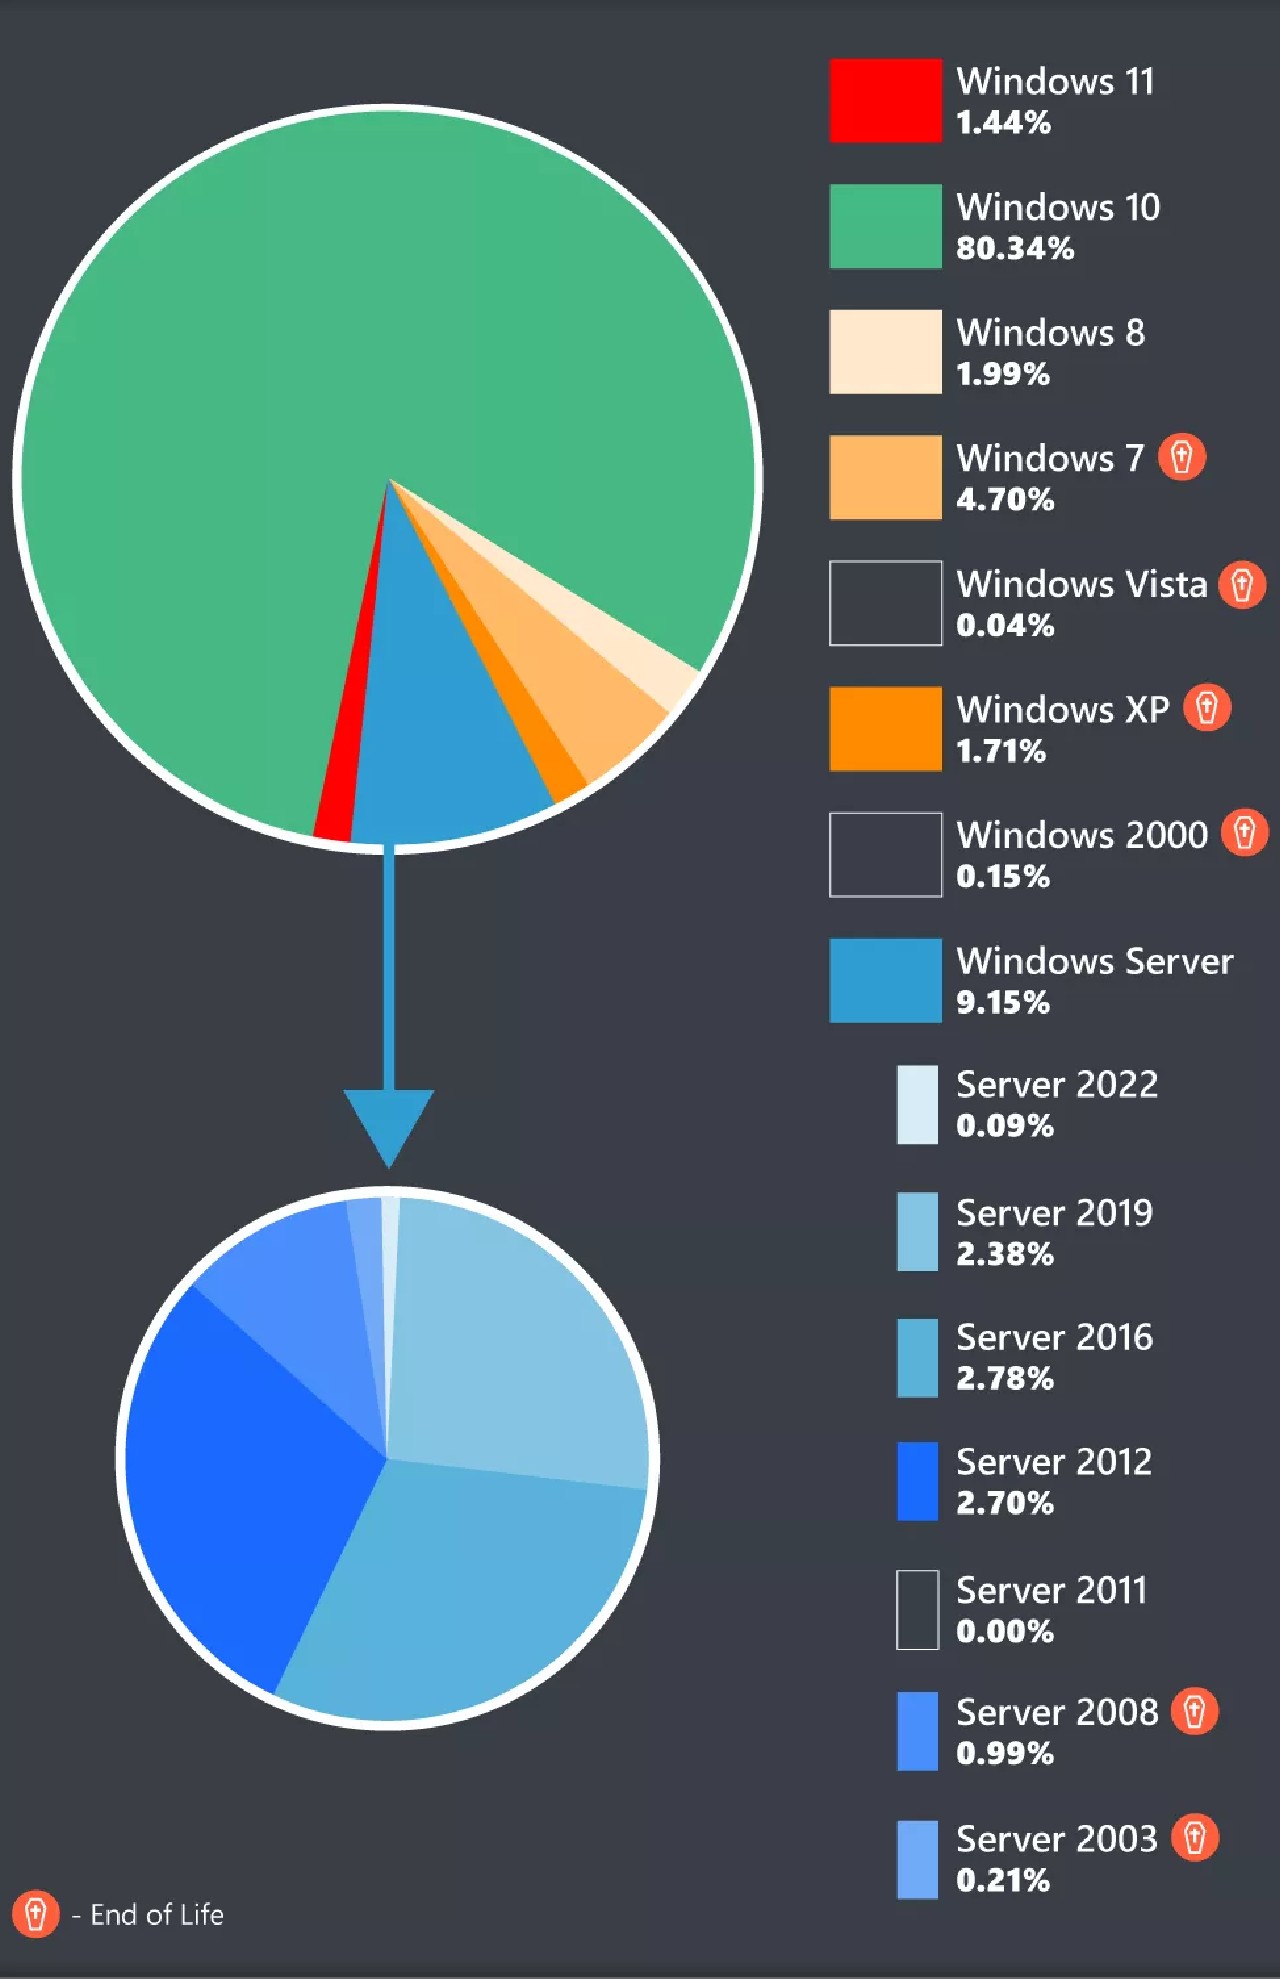 Meral Erden: Anket Sonuçlarında Windows 11, Xp'Nin Bile Gerisinde Kaldı 1